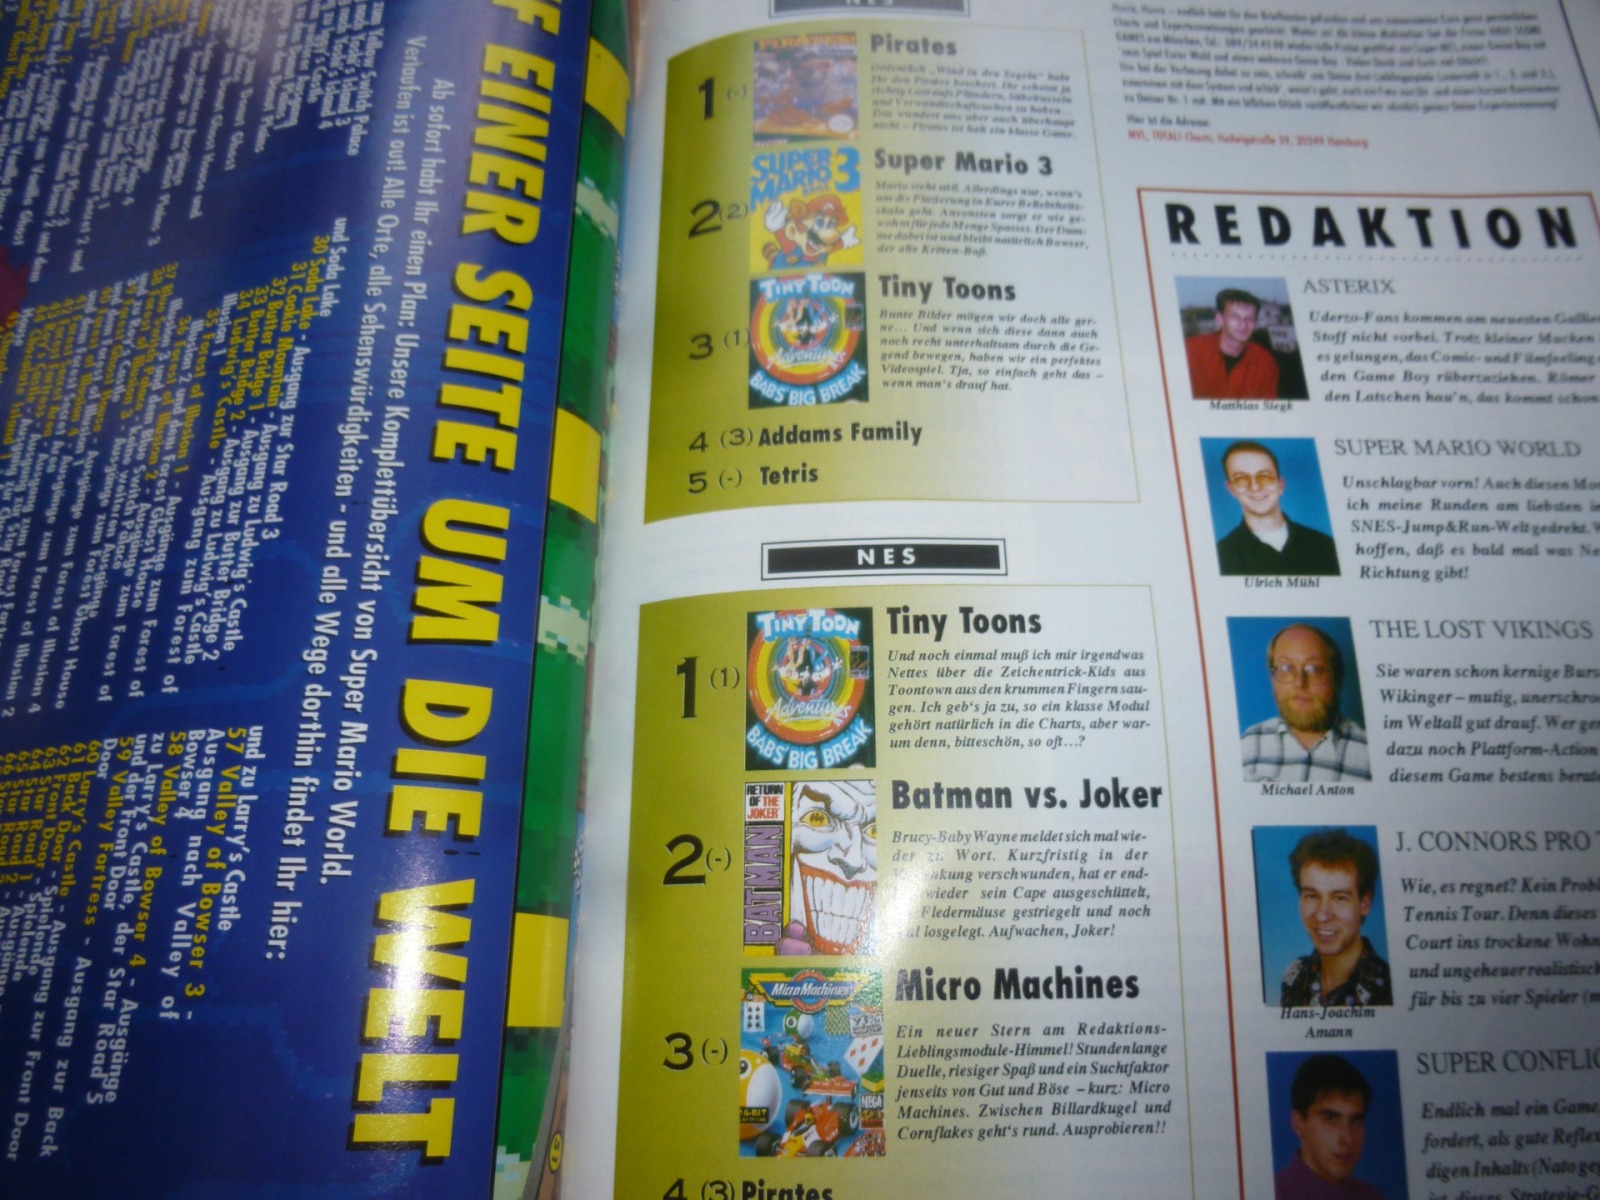 TOTAL Das unabhängige Magazin - 100% Nintendo - Ausgabe 9/93 1993 23